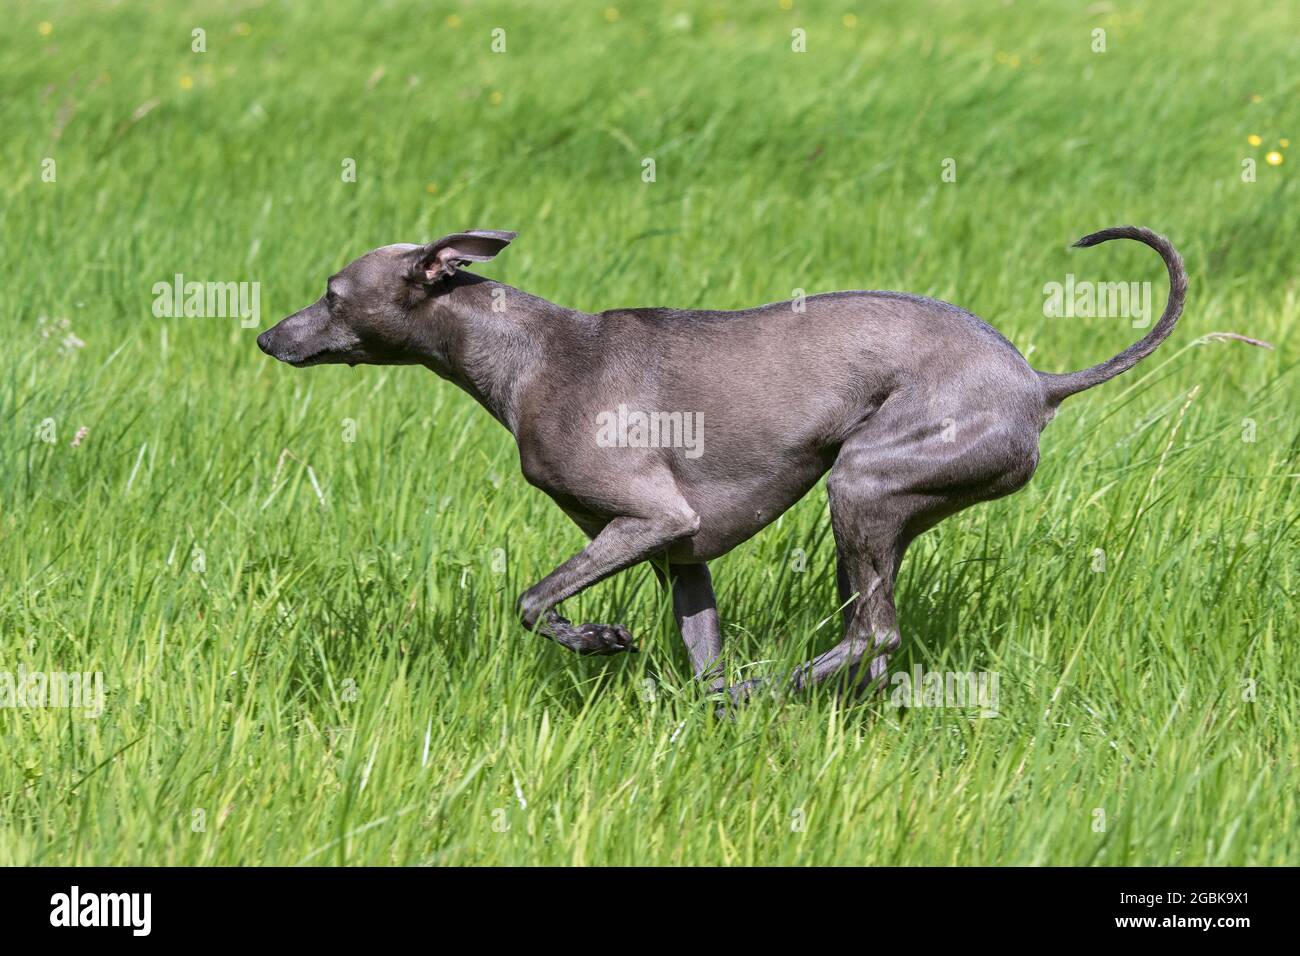 Greyhound italien / Piccolo levriero Italiano / Sighthound italien, la plus petite race de chiens des soupirs courant dans le champ Banque D'Images